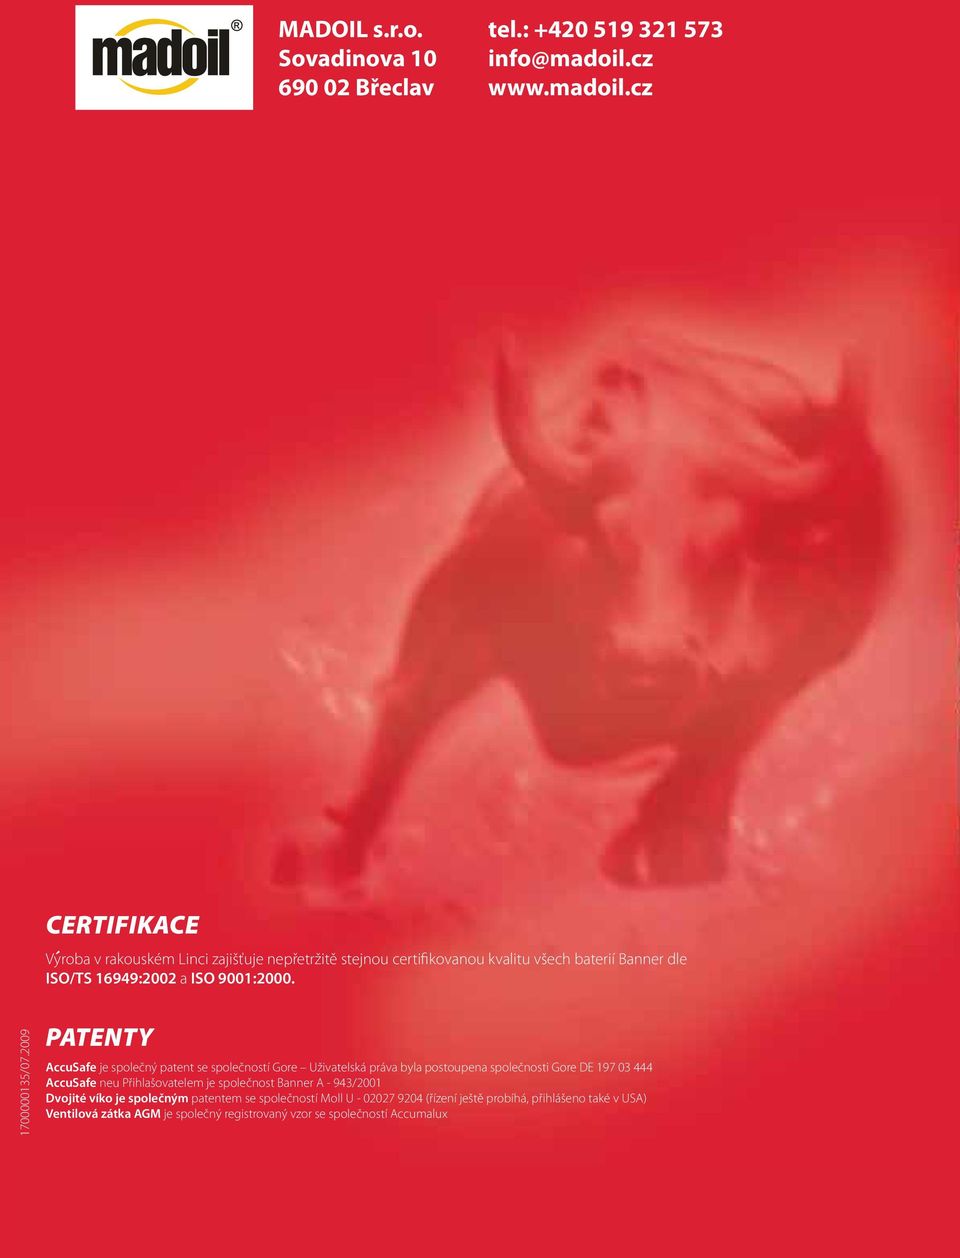 2009 PATENTY AccuSafe je společný patent se společností Gore Uživatelská práva byla postoupena společnosti Gore DE 197 03 444 AccuSafe neu Přihlašovatelem je společnost Banner A - 943/2001 Dvojité